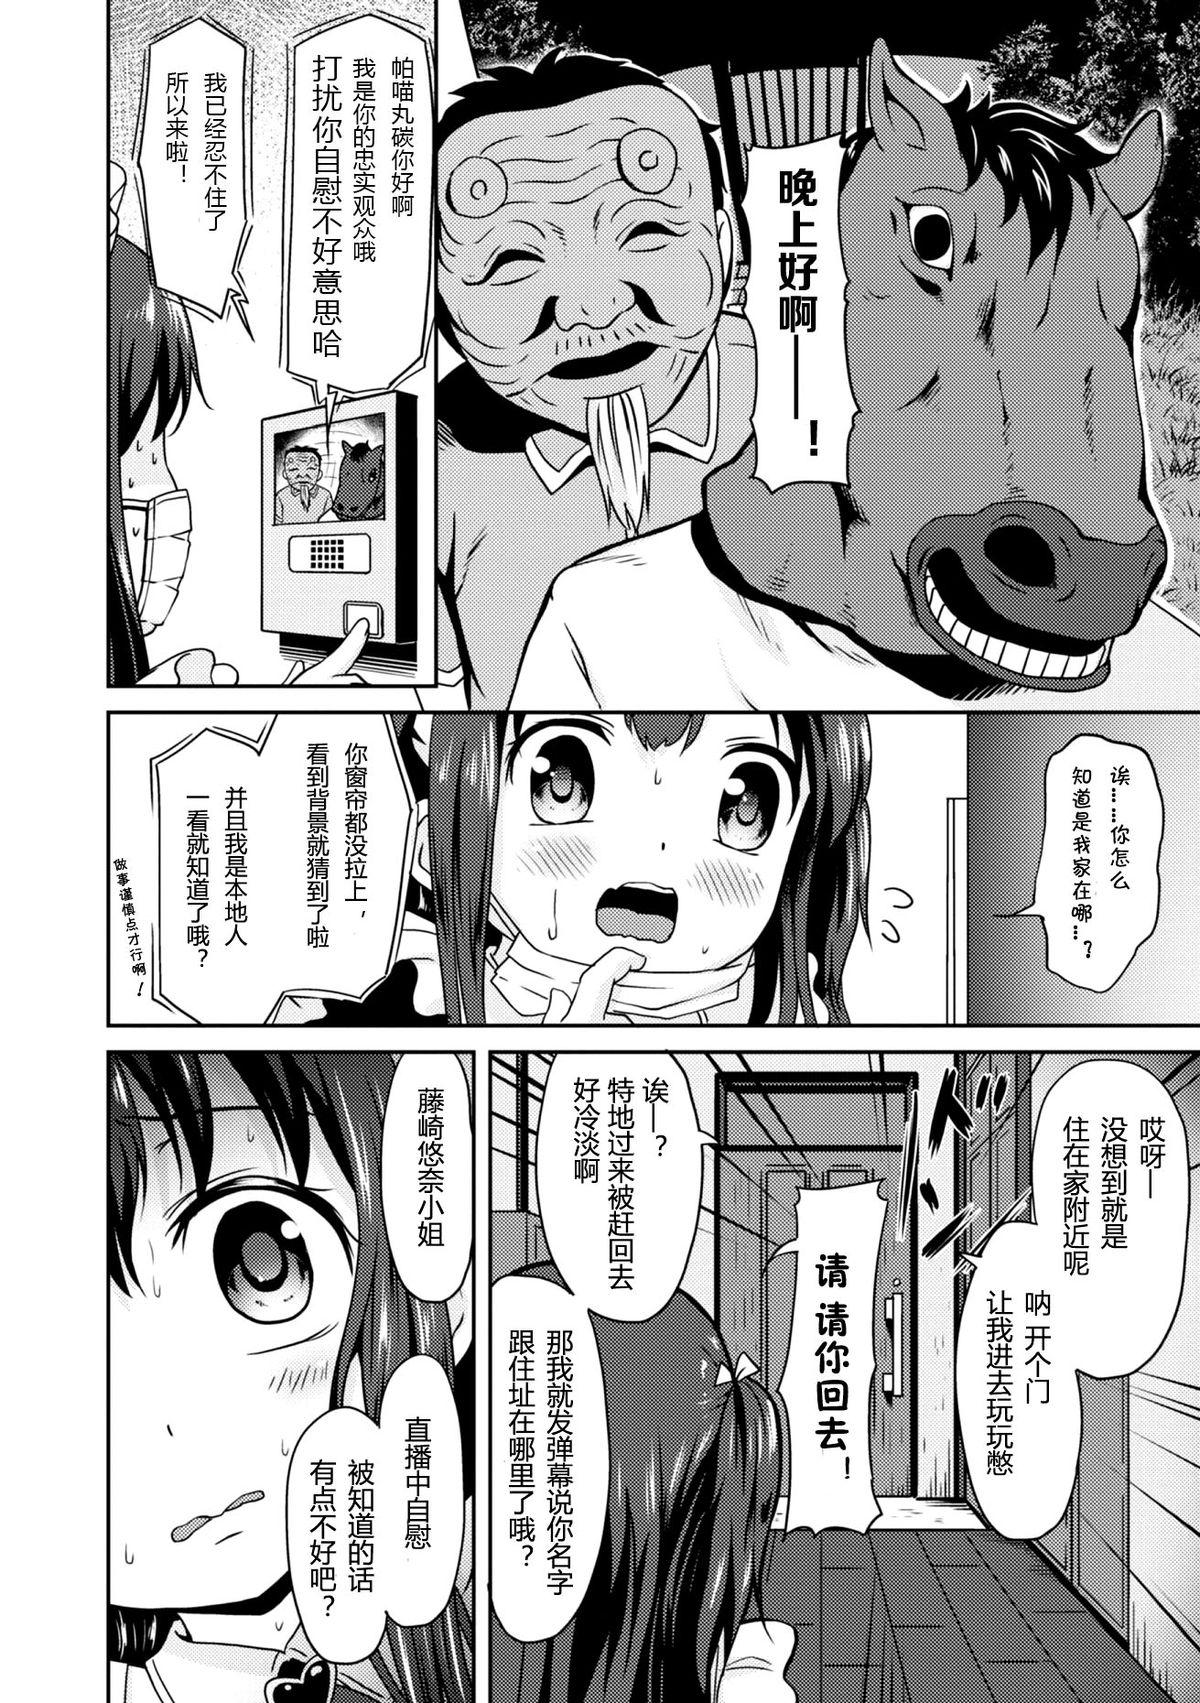 Skinny "Jigoku no" Panyumaru Seihaishin - Maboroshi no Guest Kai "ReaTotsu" Gaycum - Page 6